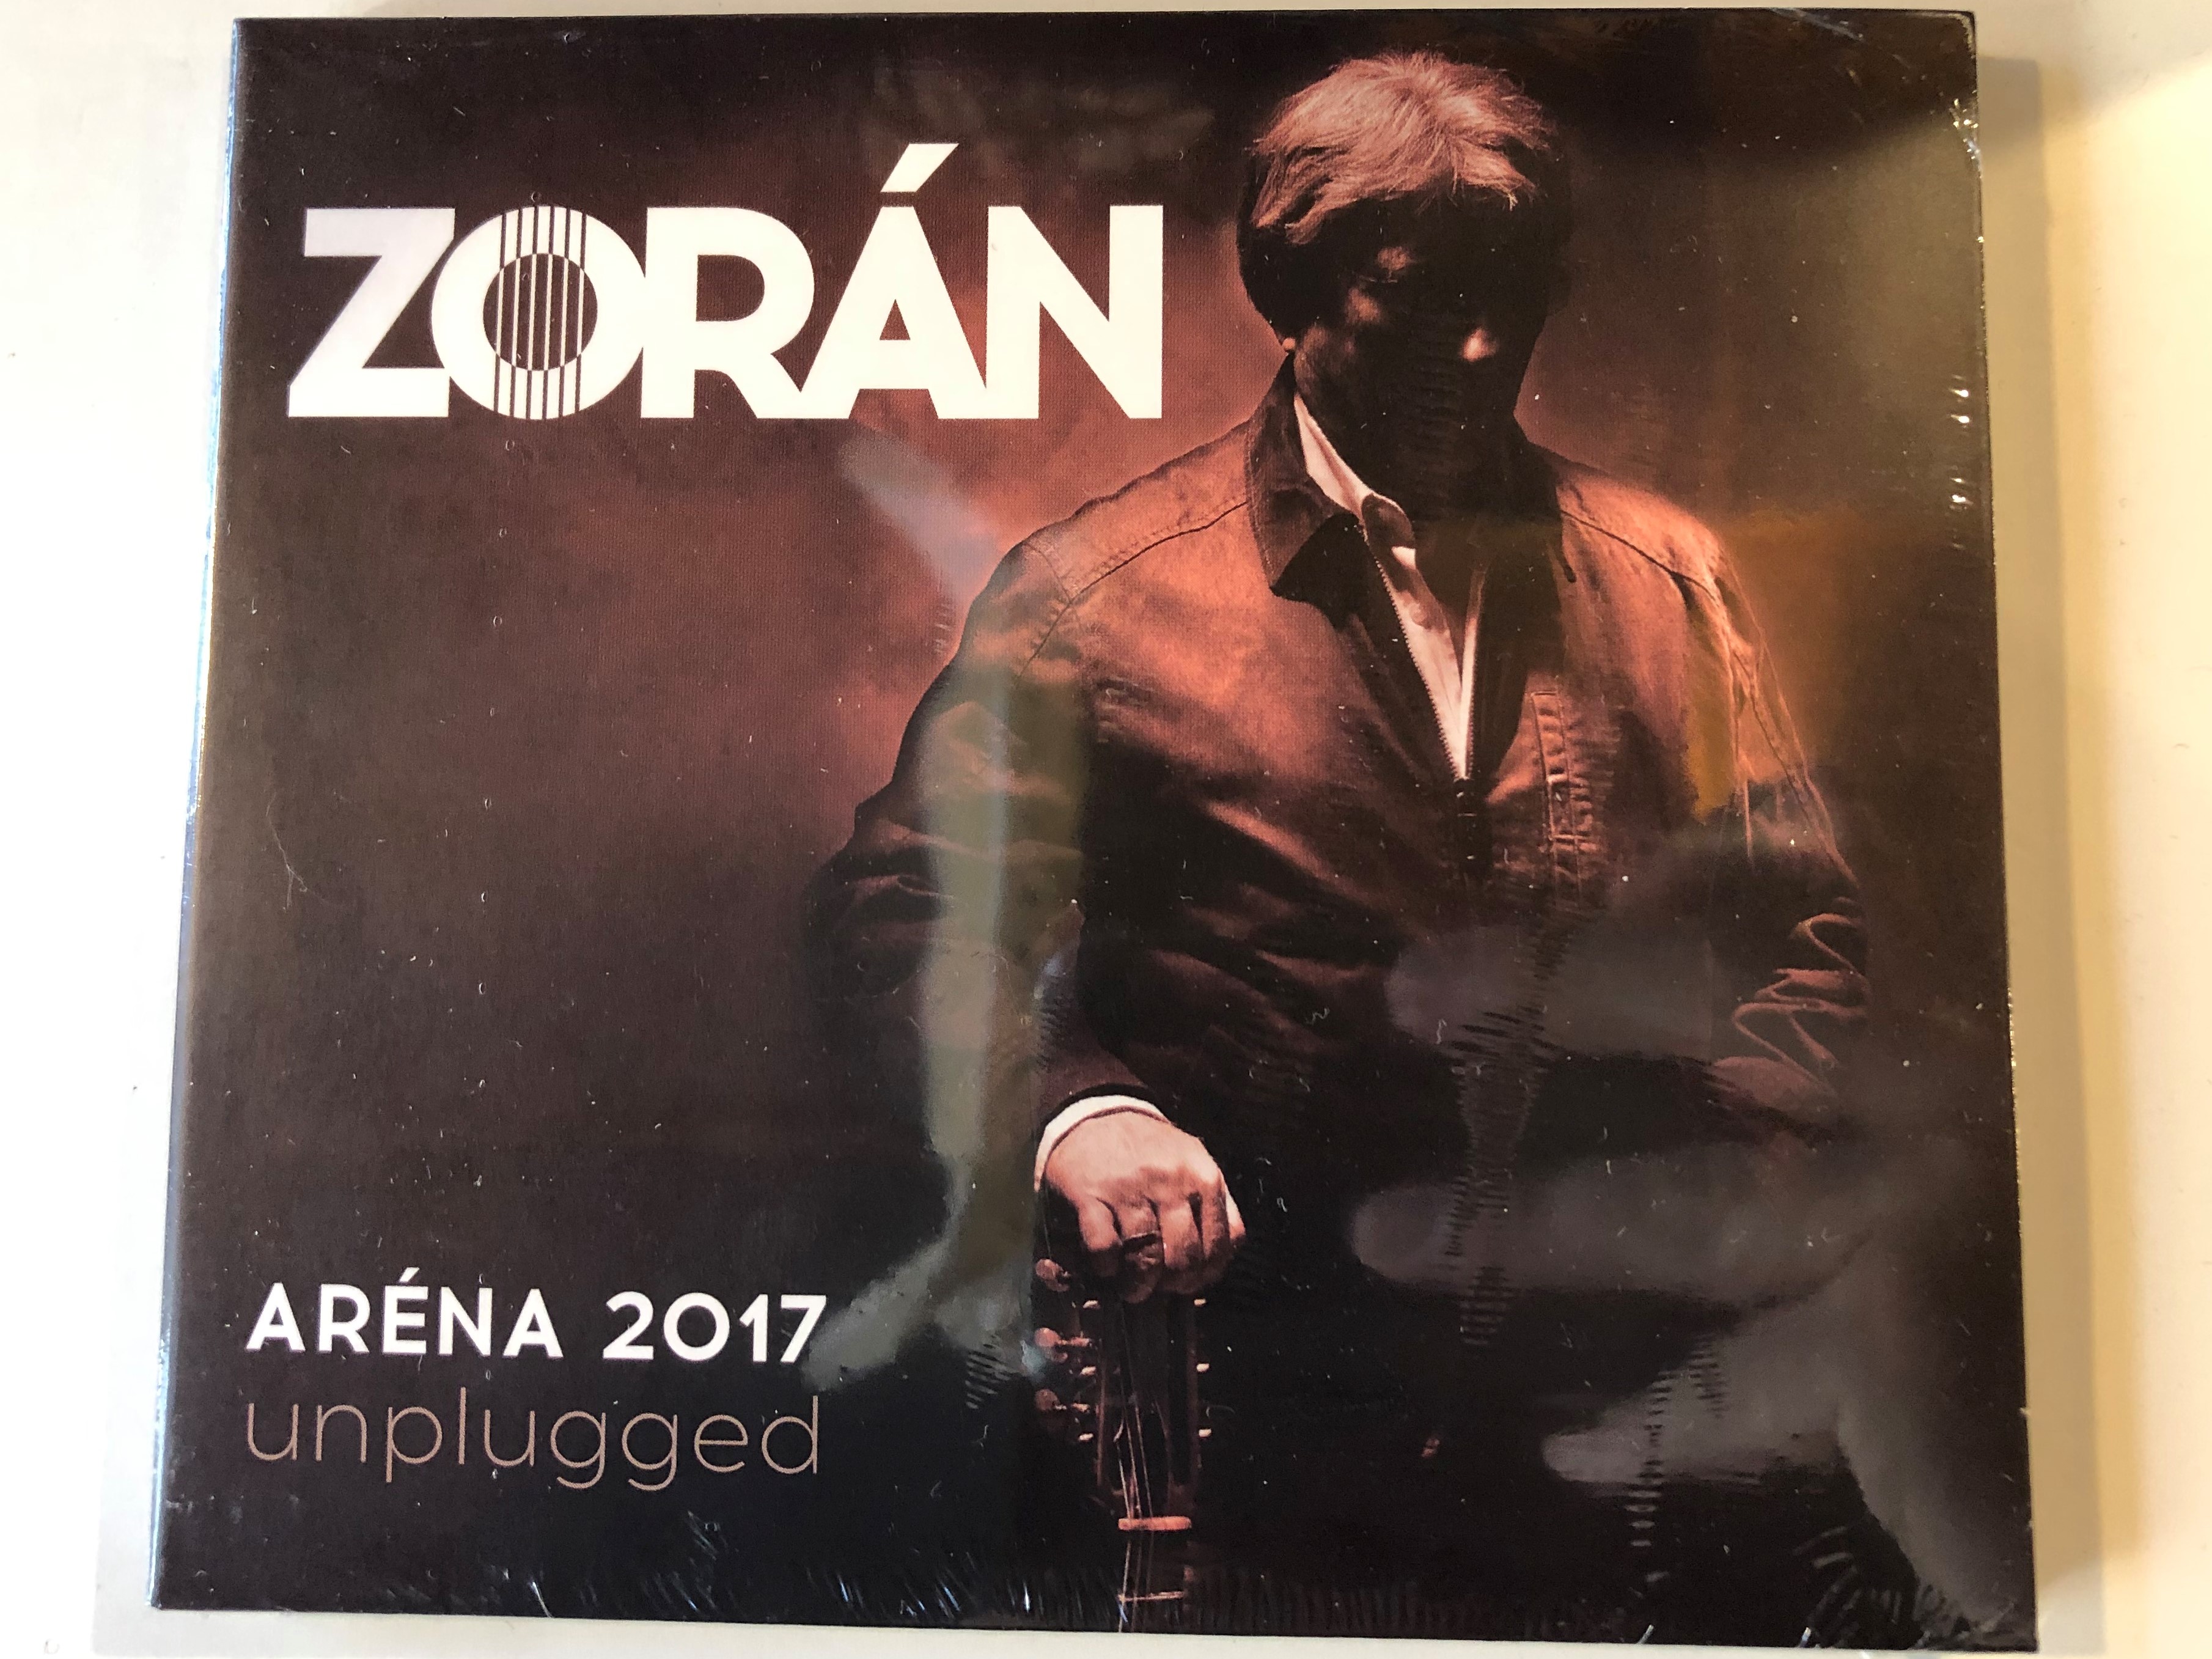 zor-n-ar-na-2017-unplugged-universal-audio-cd-2017-5787845-1-.jpg